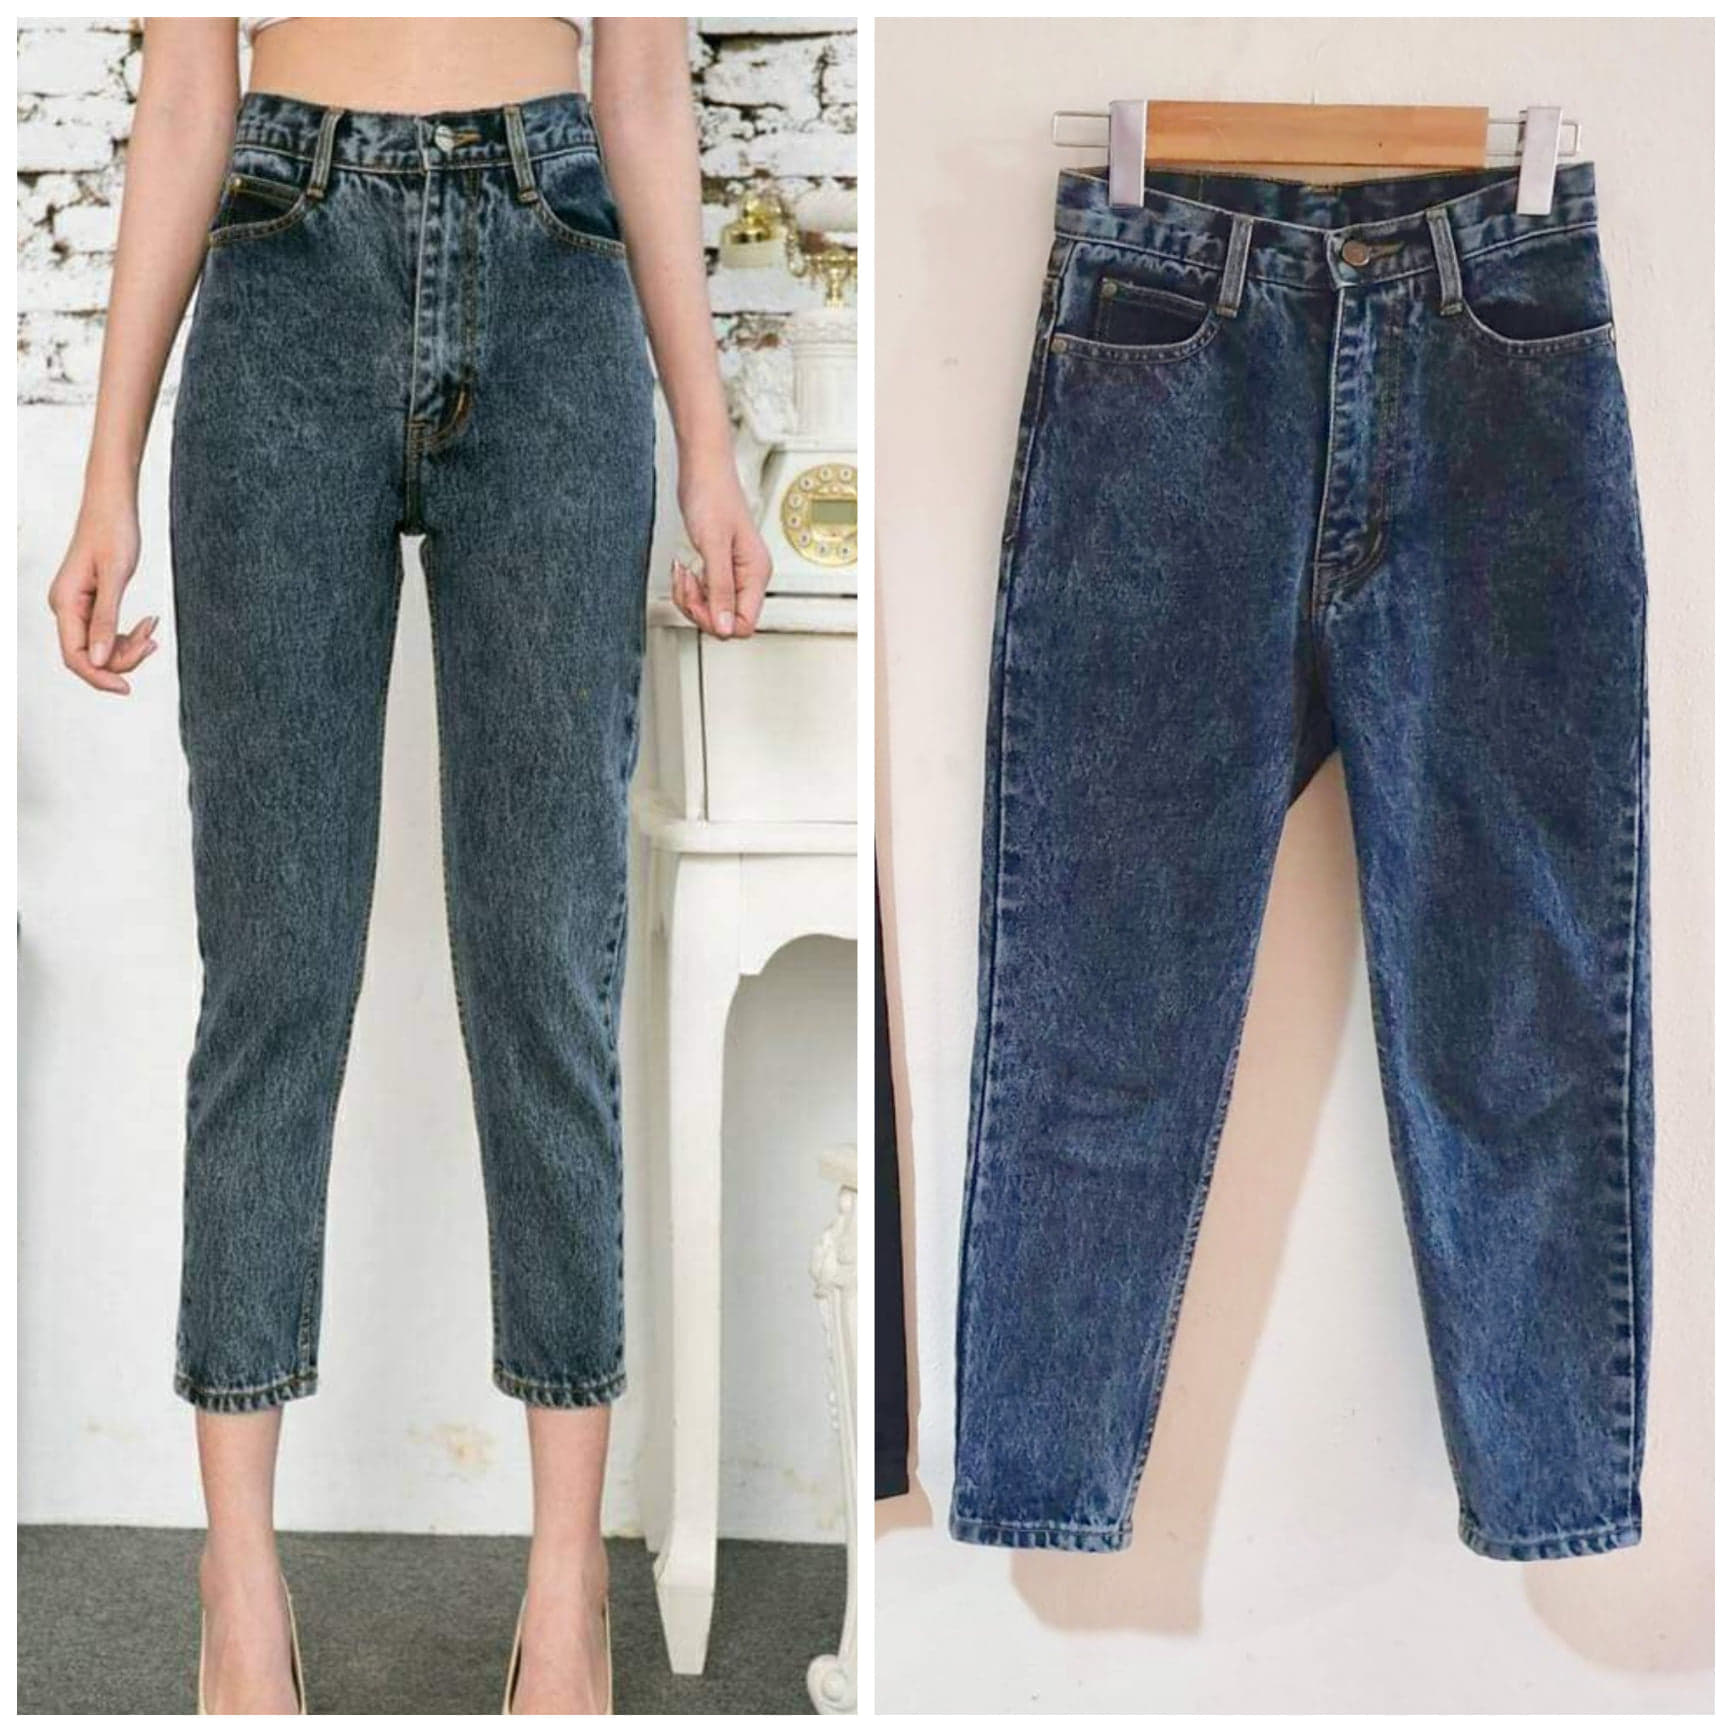 [ส่งฟรี] Fineday Jeans[10สี ไซส์ S-6XL) กางเกงยีนส์ผู้หญิง ป้ายกวาง บอยเฟรนด์ สลิมเข้ารูป แบบเรียบ เอวสูง ผ้านิ่มไม่ยืด กางเกงผู้หญิง